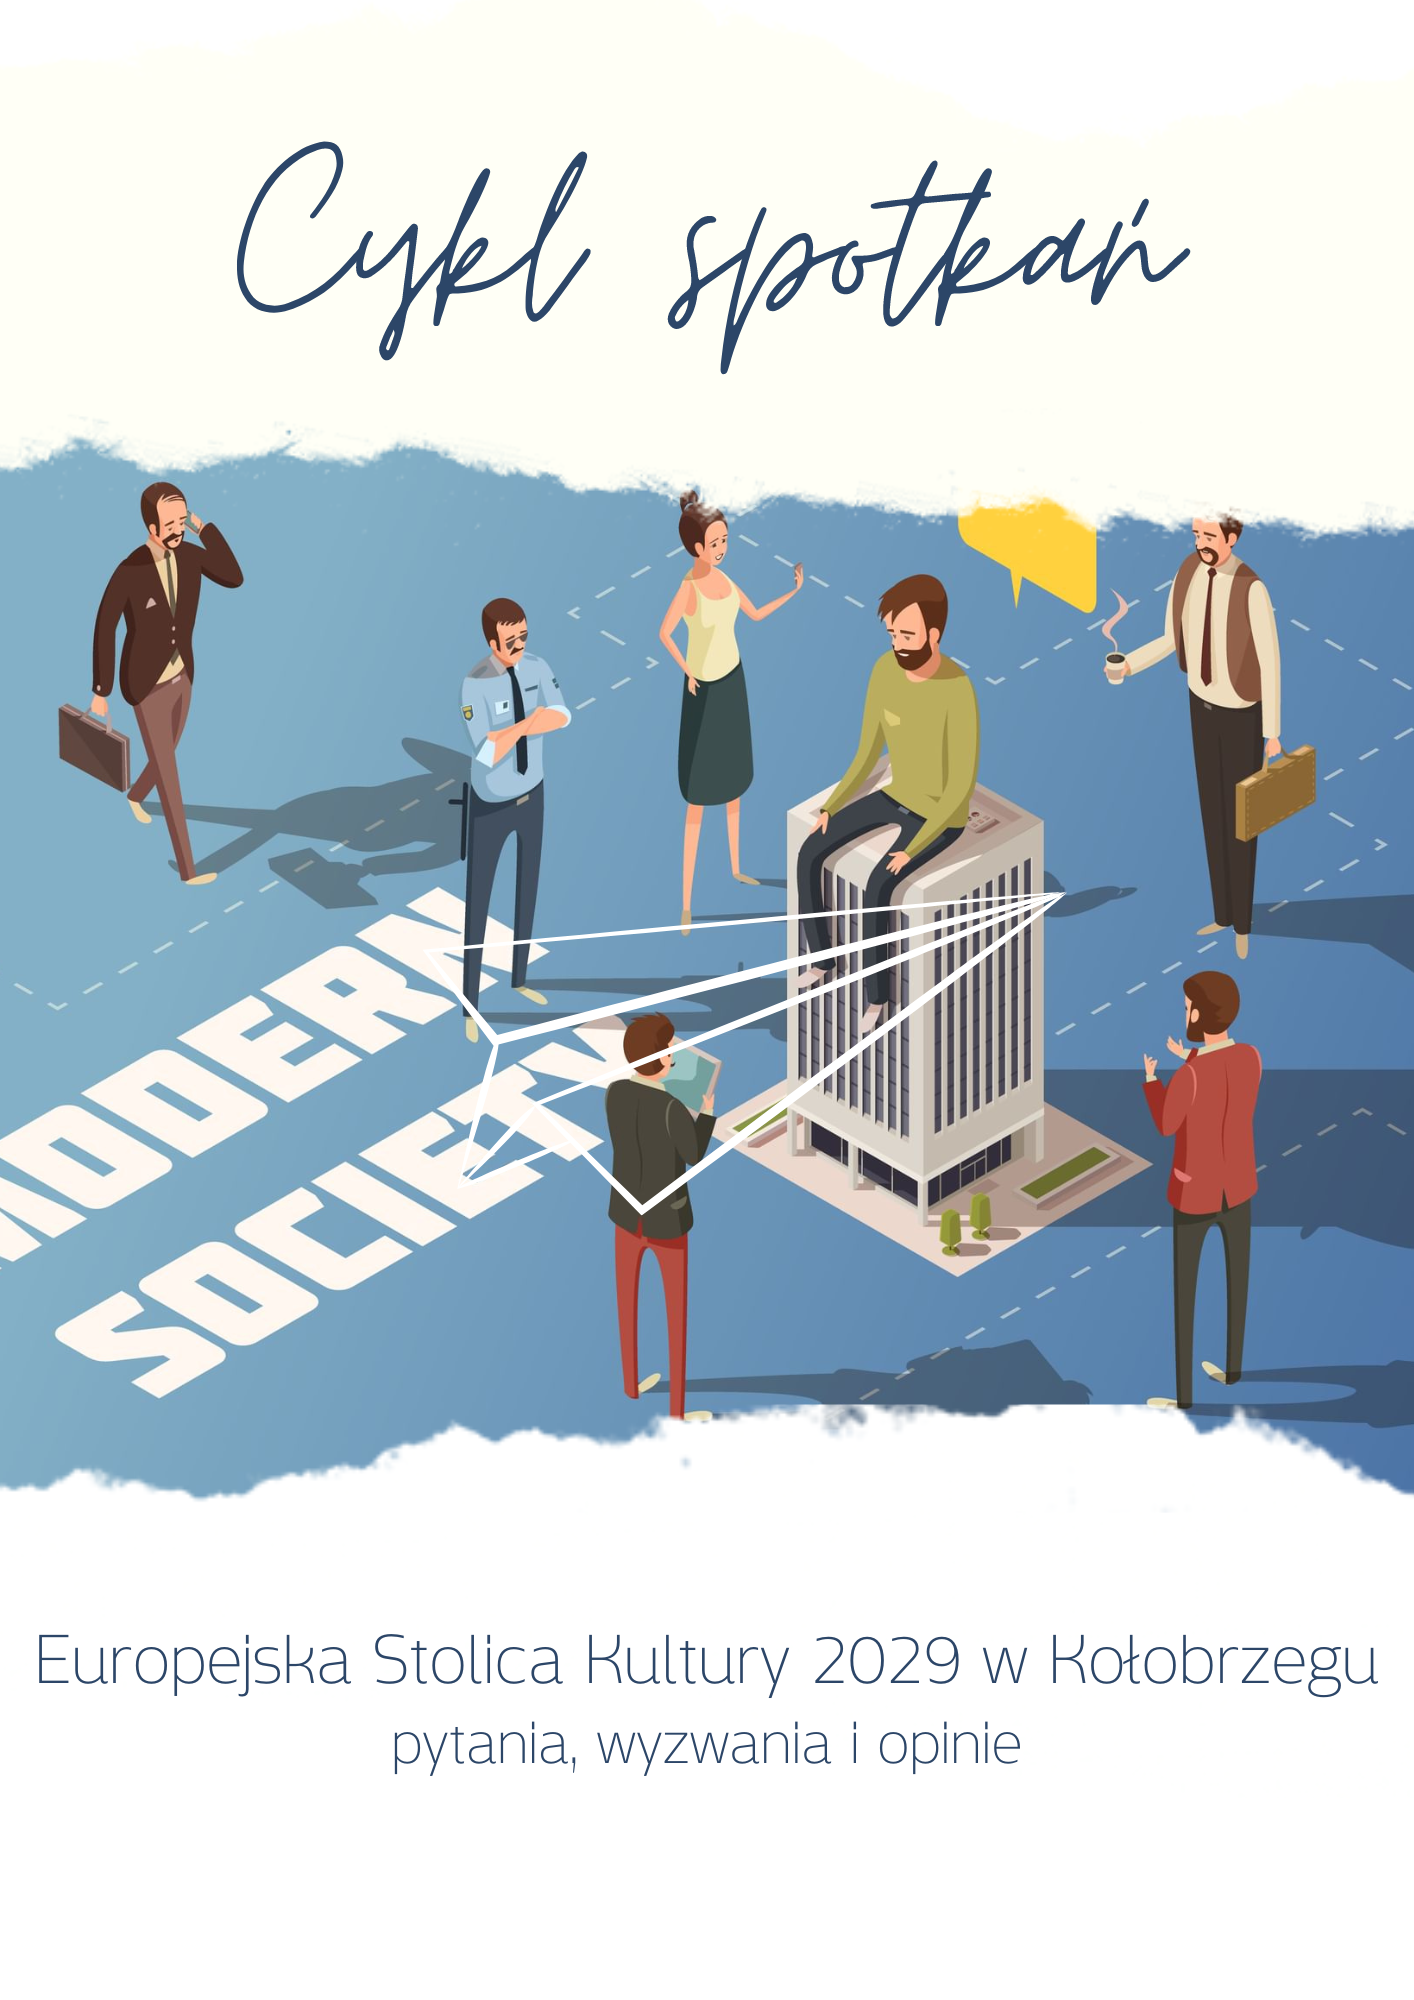 Cykl spotkań "Europejska Stolica Kultury 2029 w Kołobrzegu - pytania, wyzwania i opinie"